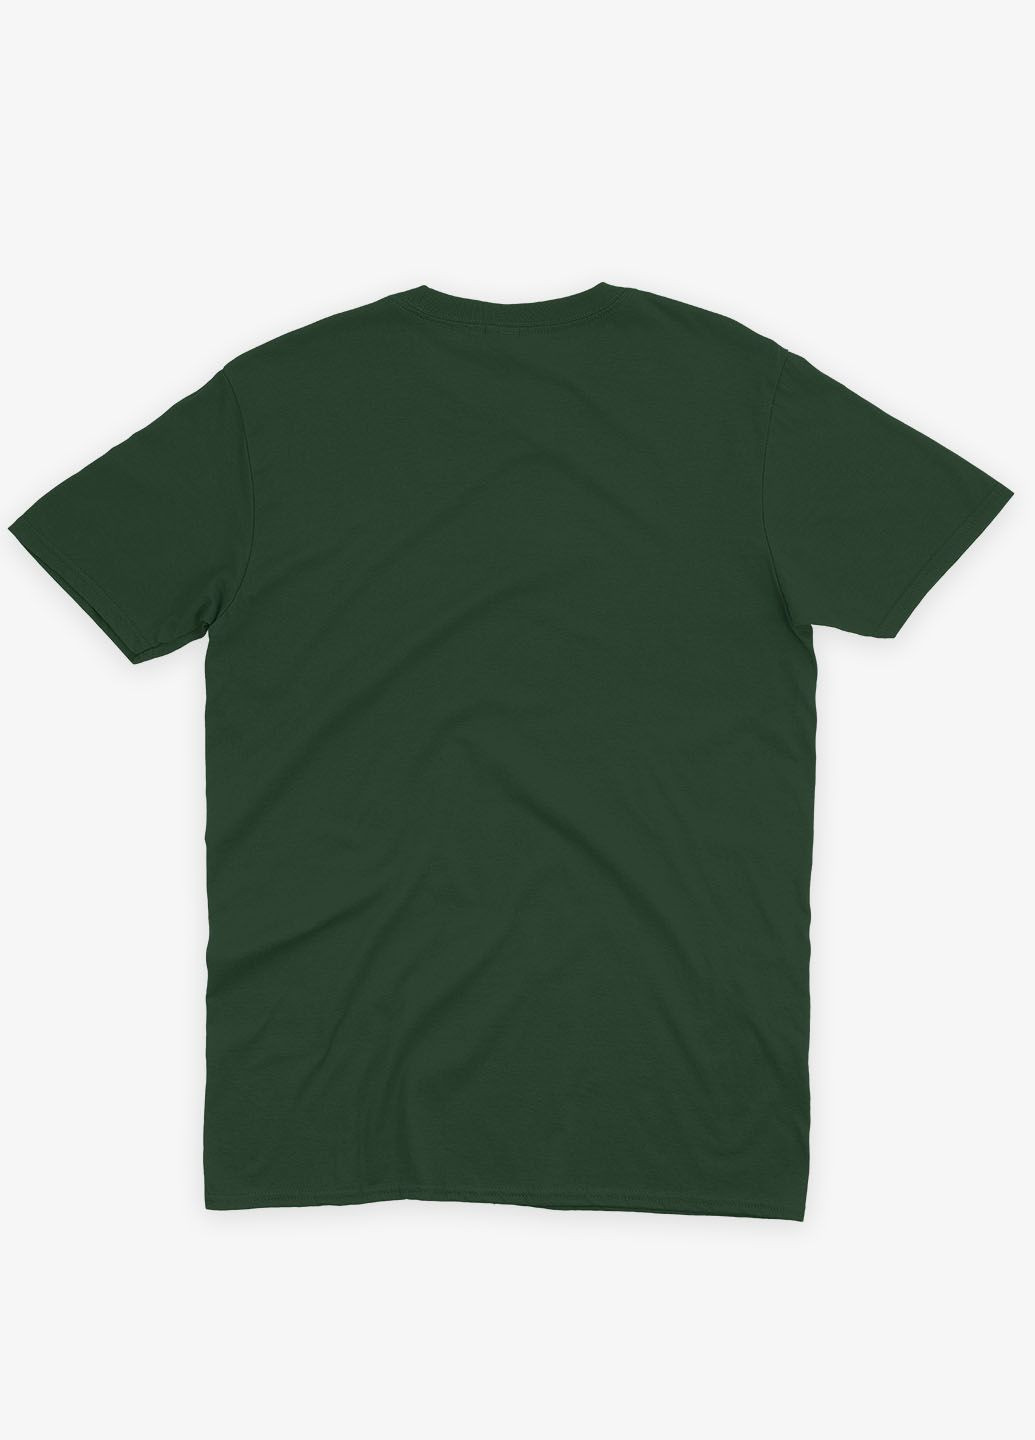 Темно-зеленая мужская футболка с патриотическим принтом гербтризуб (ts001-4-bog-005-1-104) Modno